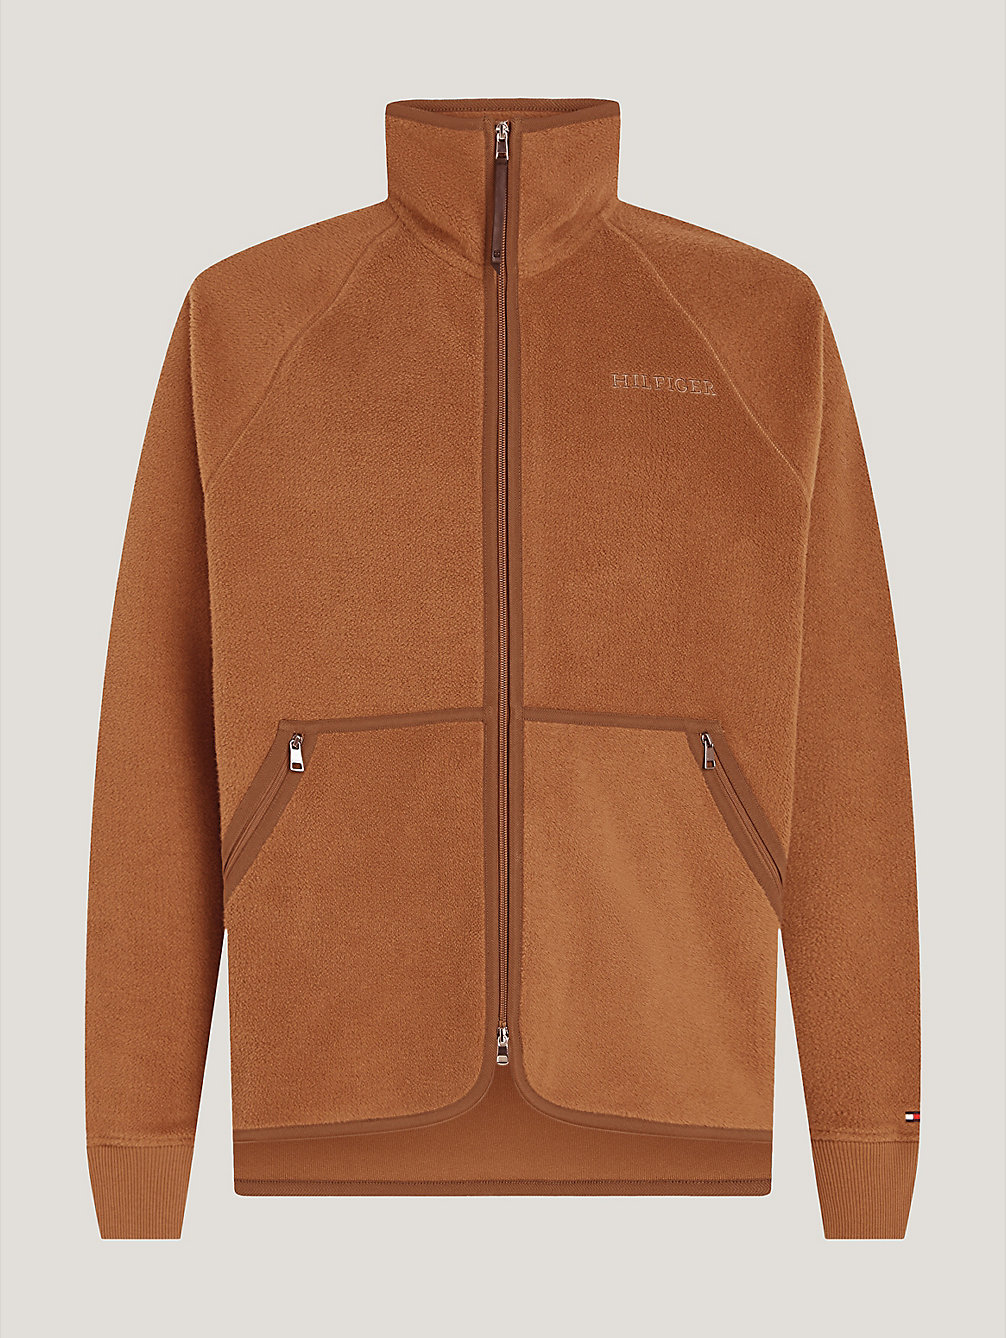 brown sweter z logo hilfiger czcionką monotypową dla mężczyźni - tommy hilfiger